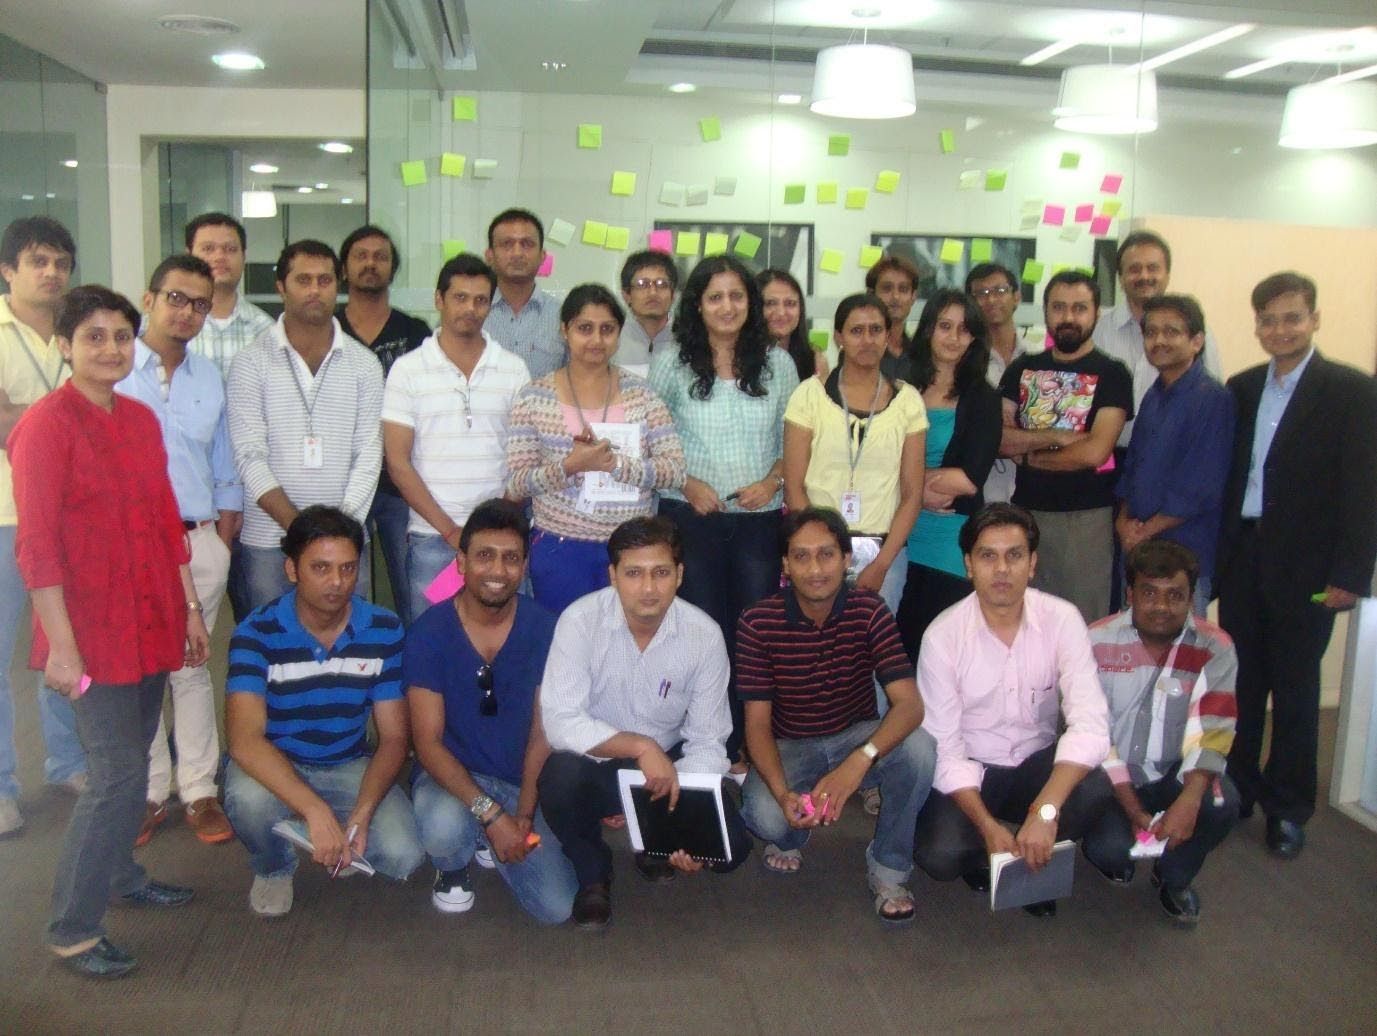 VG Siddhartha mit seinem Team während eines Workshops zur kreativen Problemlösung im Café Coffee Day im Jahr 2011.